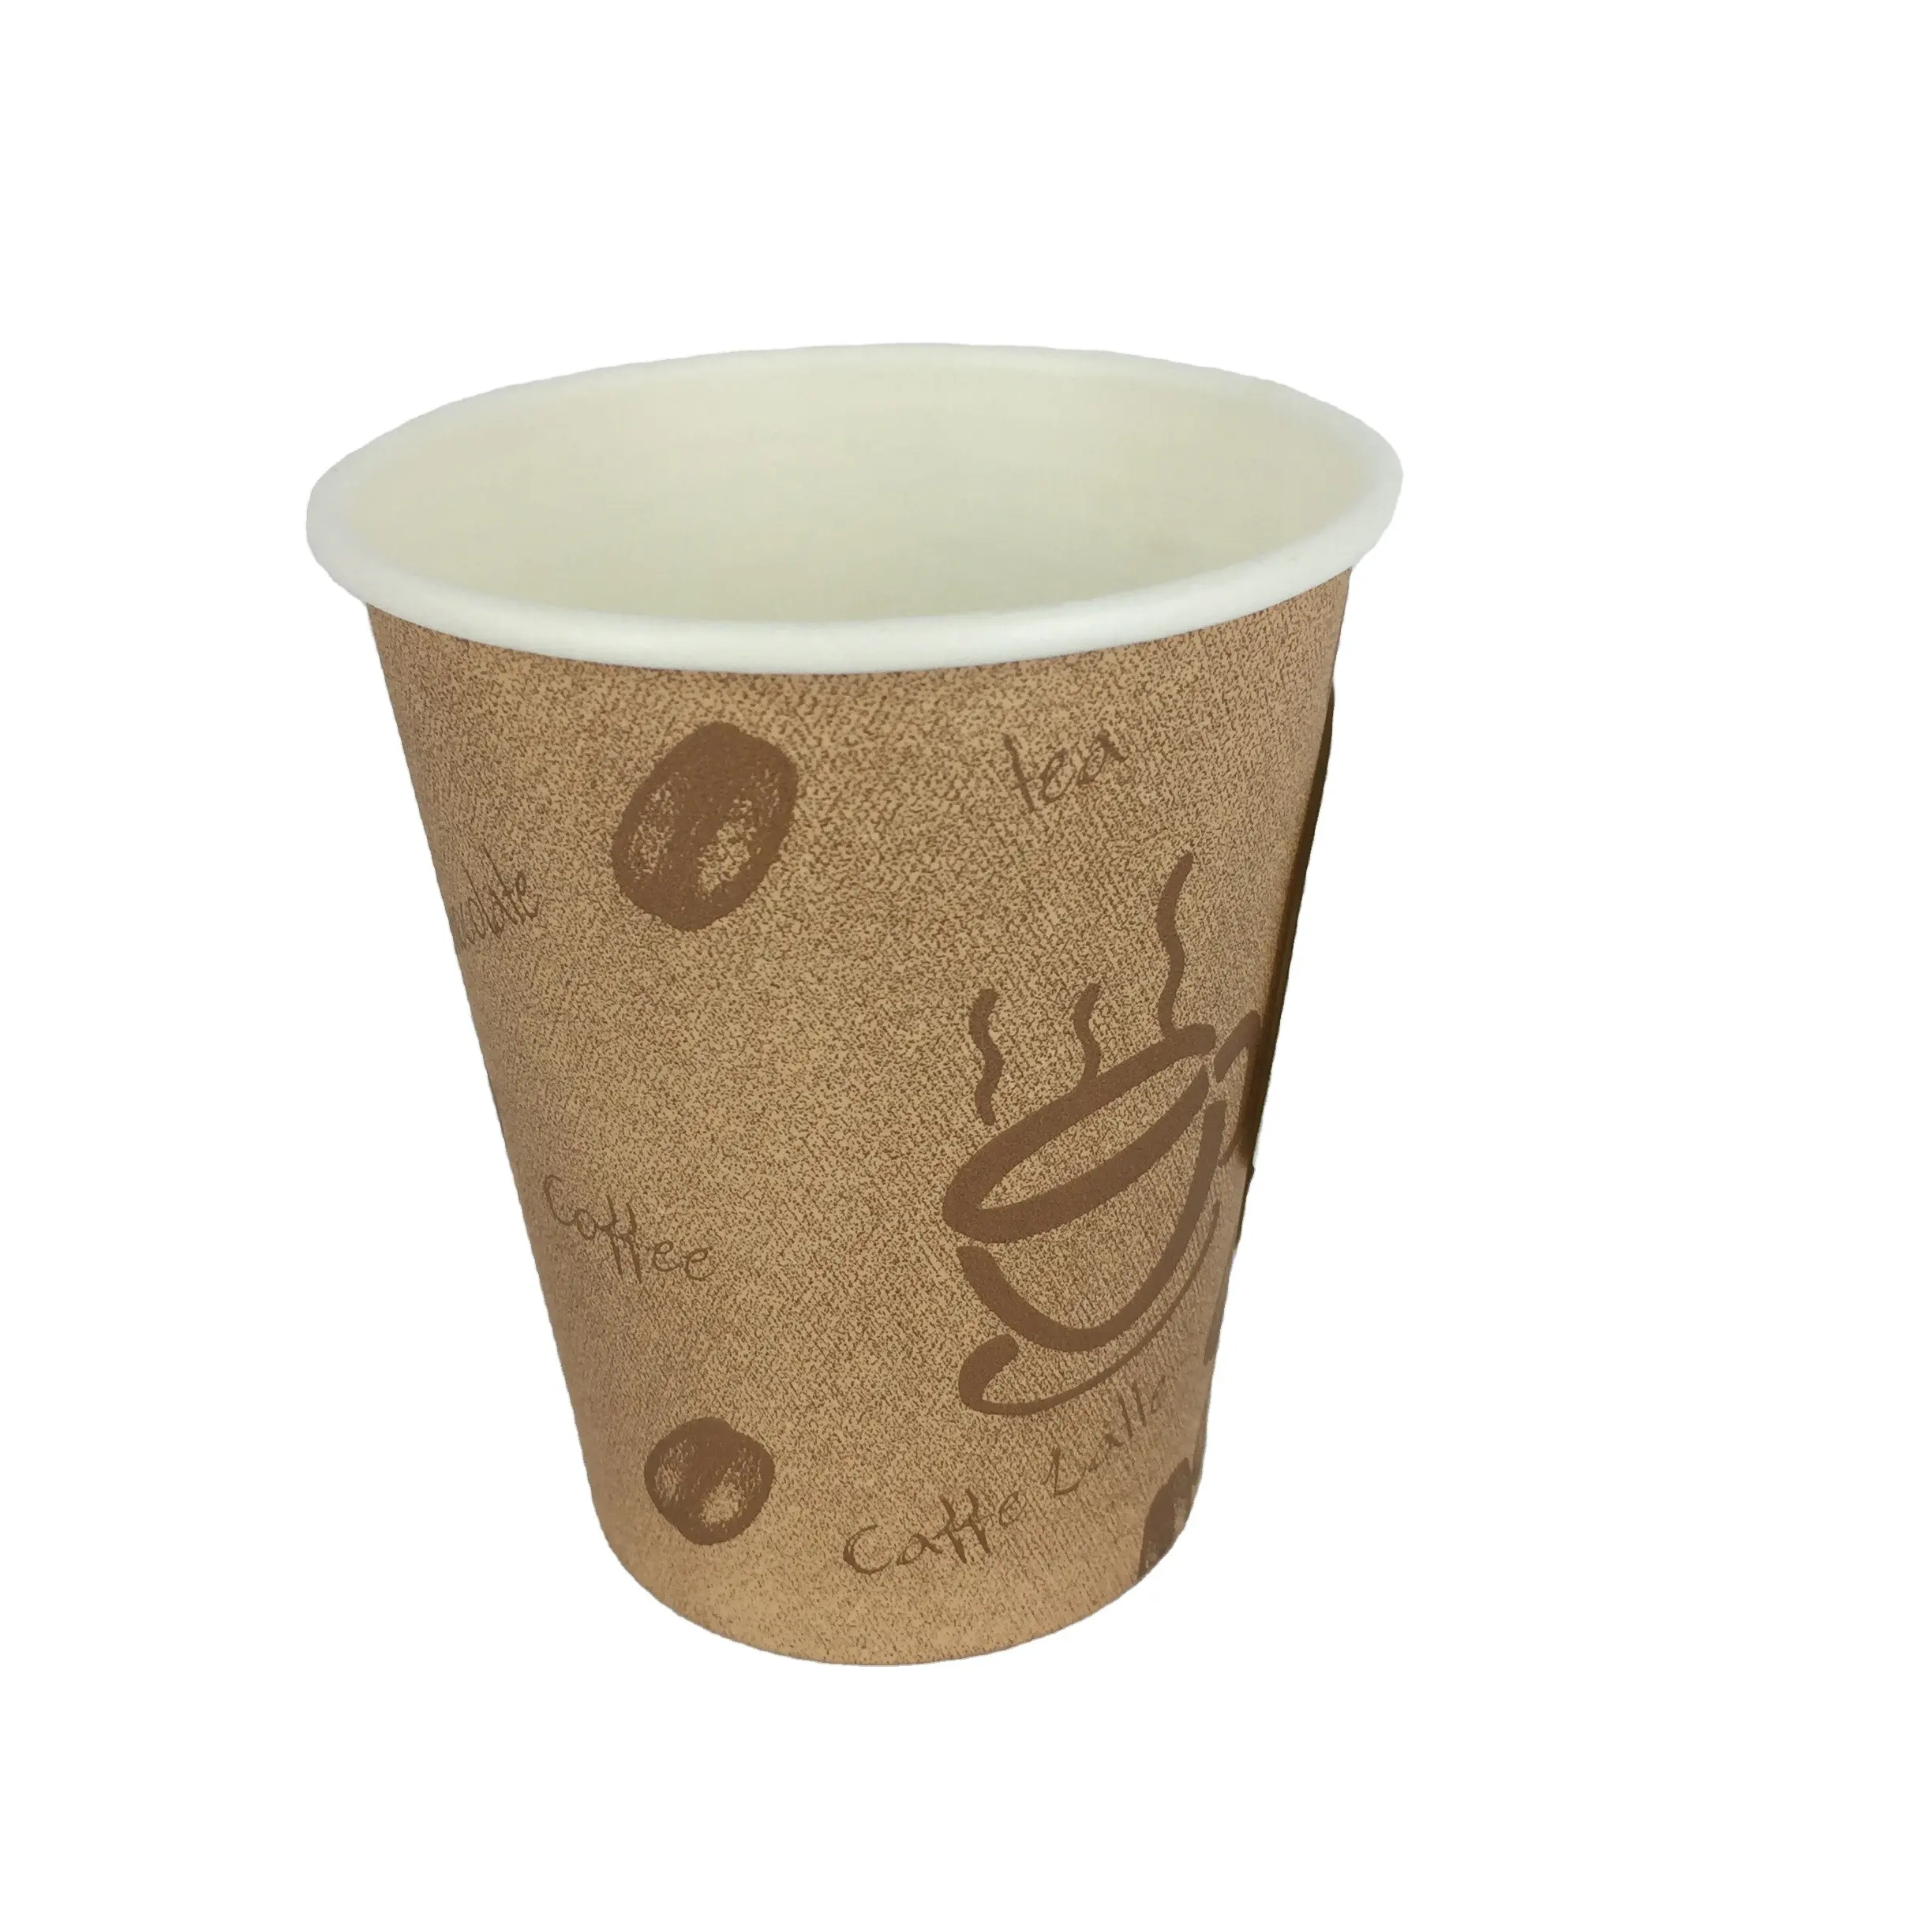 أكواب ورقية متعددة الألوان للقهوة تُستخدم لمرة واحدة بسعر المصنع أكواب ورقية مع شعار للمشروبات الساخنة